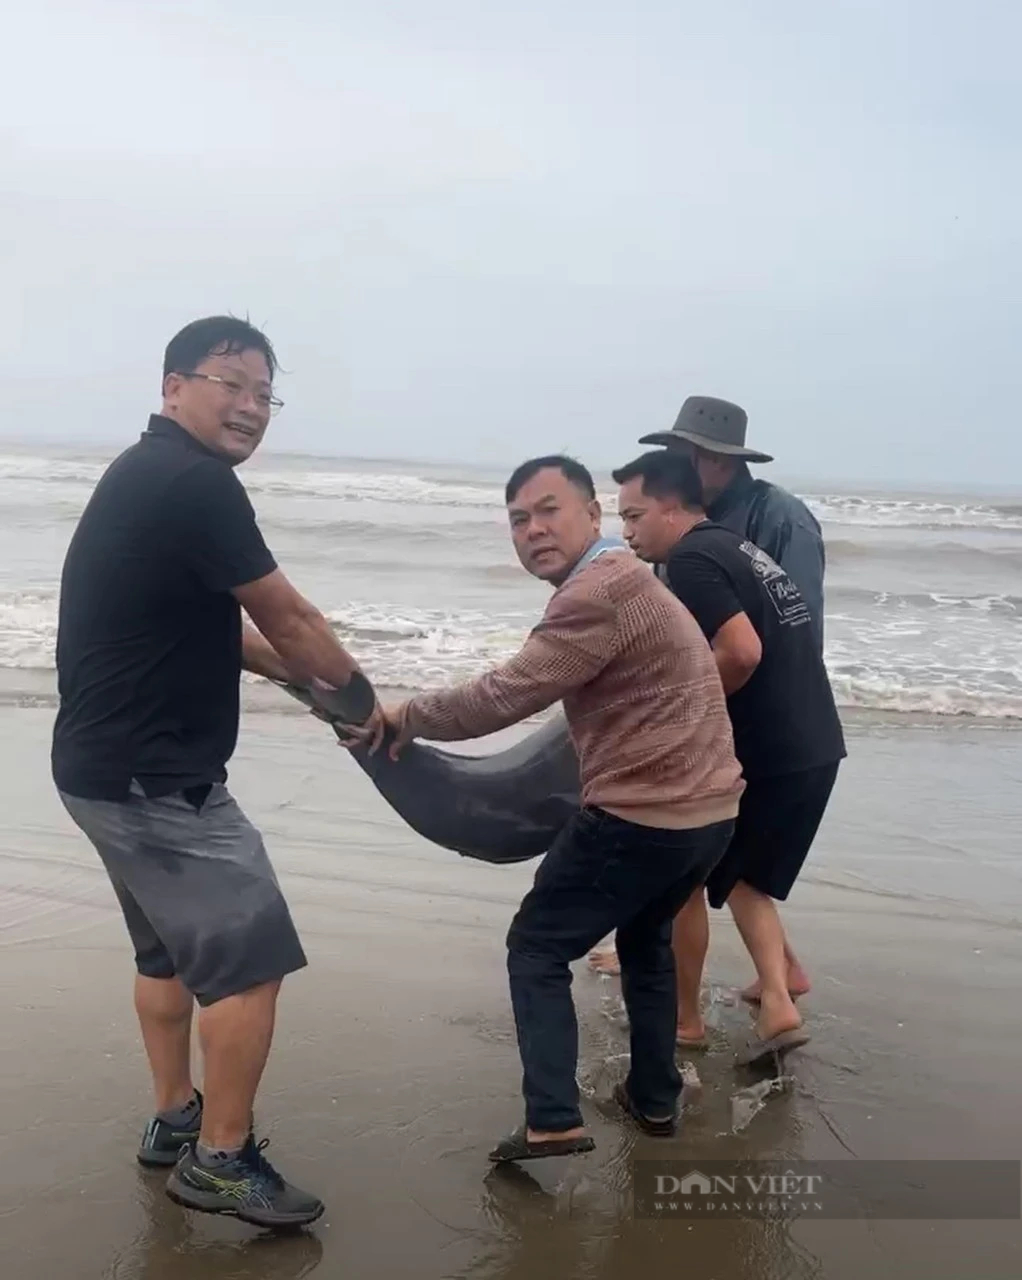 
Một ngư dân Hà Tĩnh bắt được 20 cá heo 40 năm mới thấy, người dân góp tiền mua cá thả về tự nhiên- Ảnh 3.